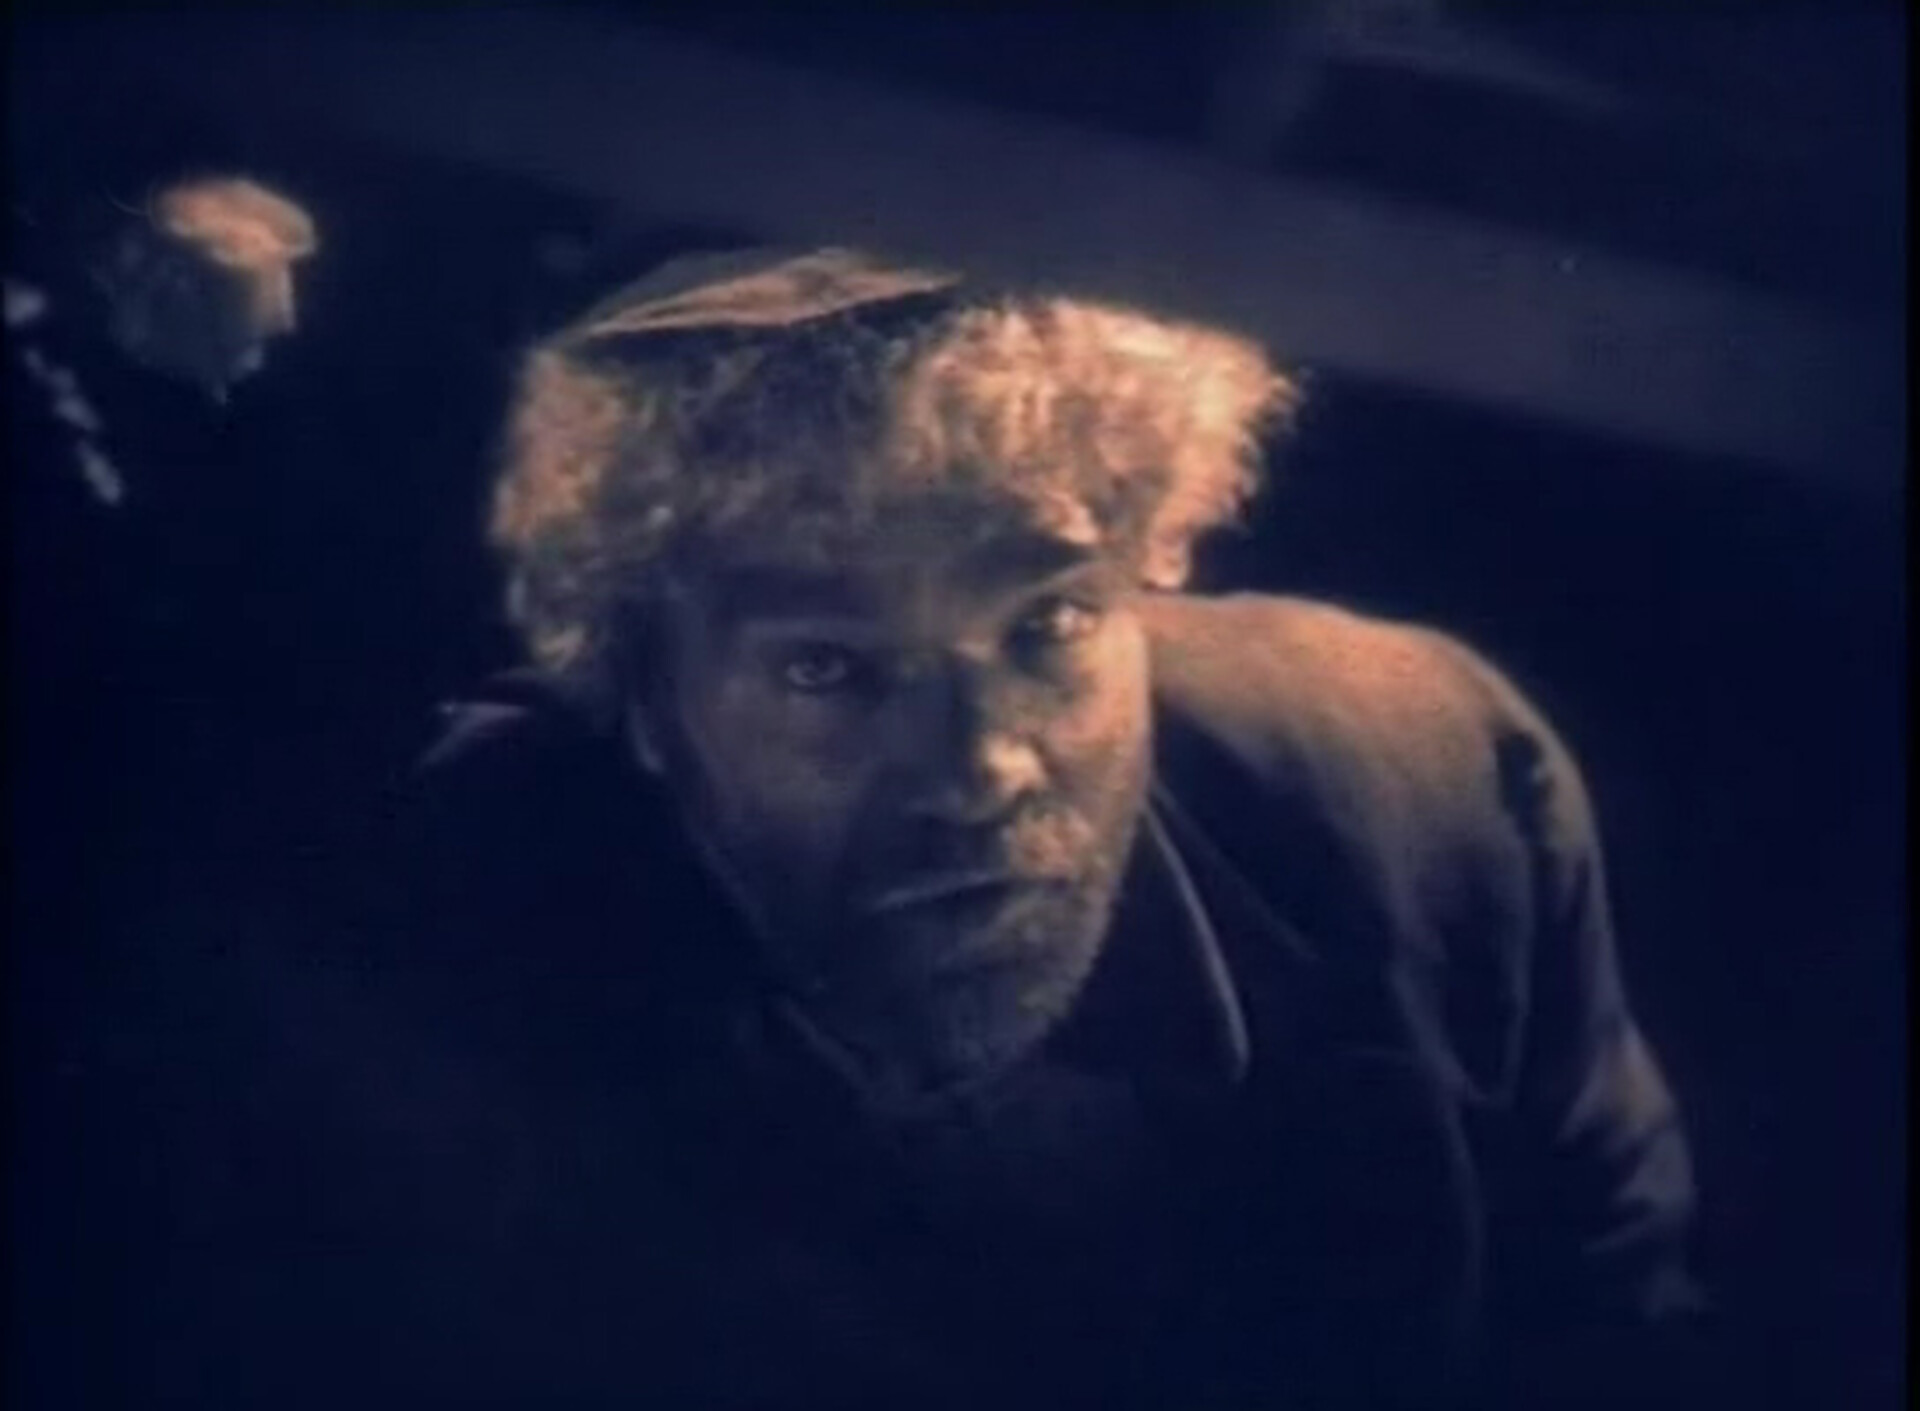  Kadr z amerykańskiego filmu „Chciwość” z 1924 roku. Widać na nim mężczyznę patrzącego w górę. Mężczyzna ma jasne, kręcone włosy i zarost. 